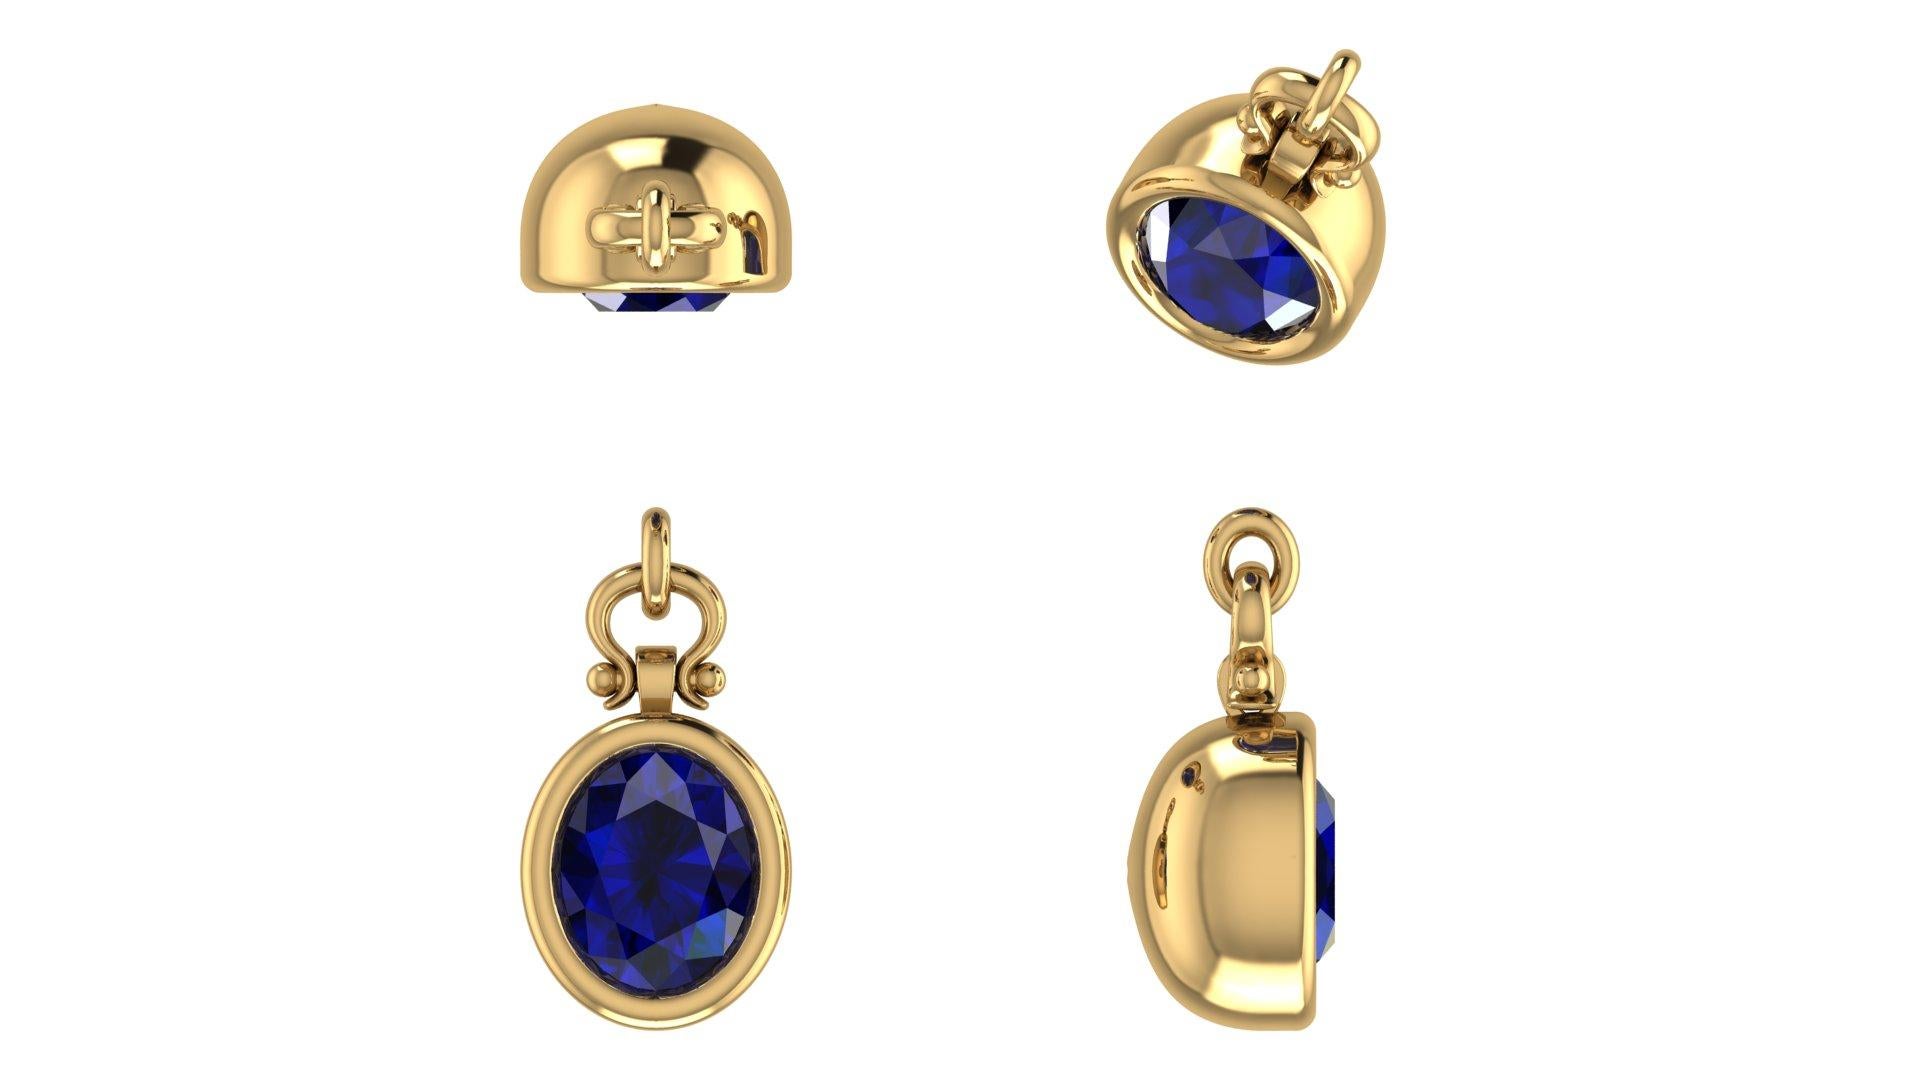 Berberyn Certified 3.27 Carat Oval Cut Blue Sapphire Pendant Necklace in 18k For Sale 1